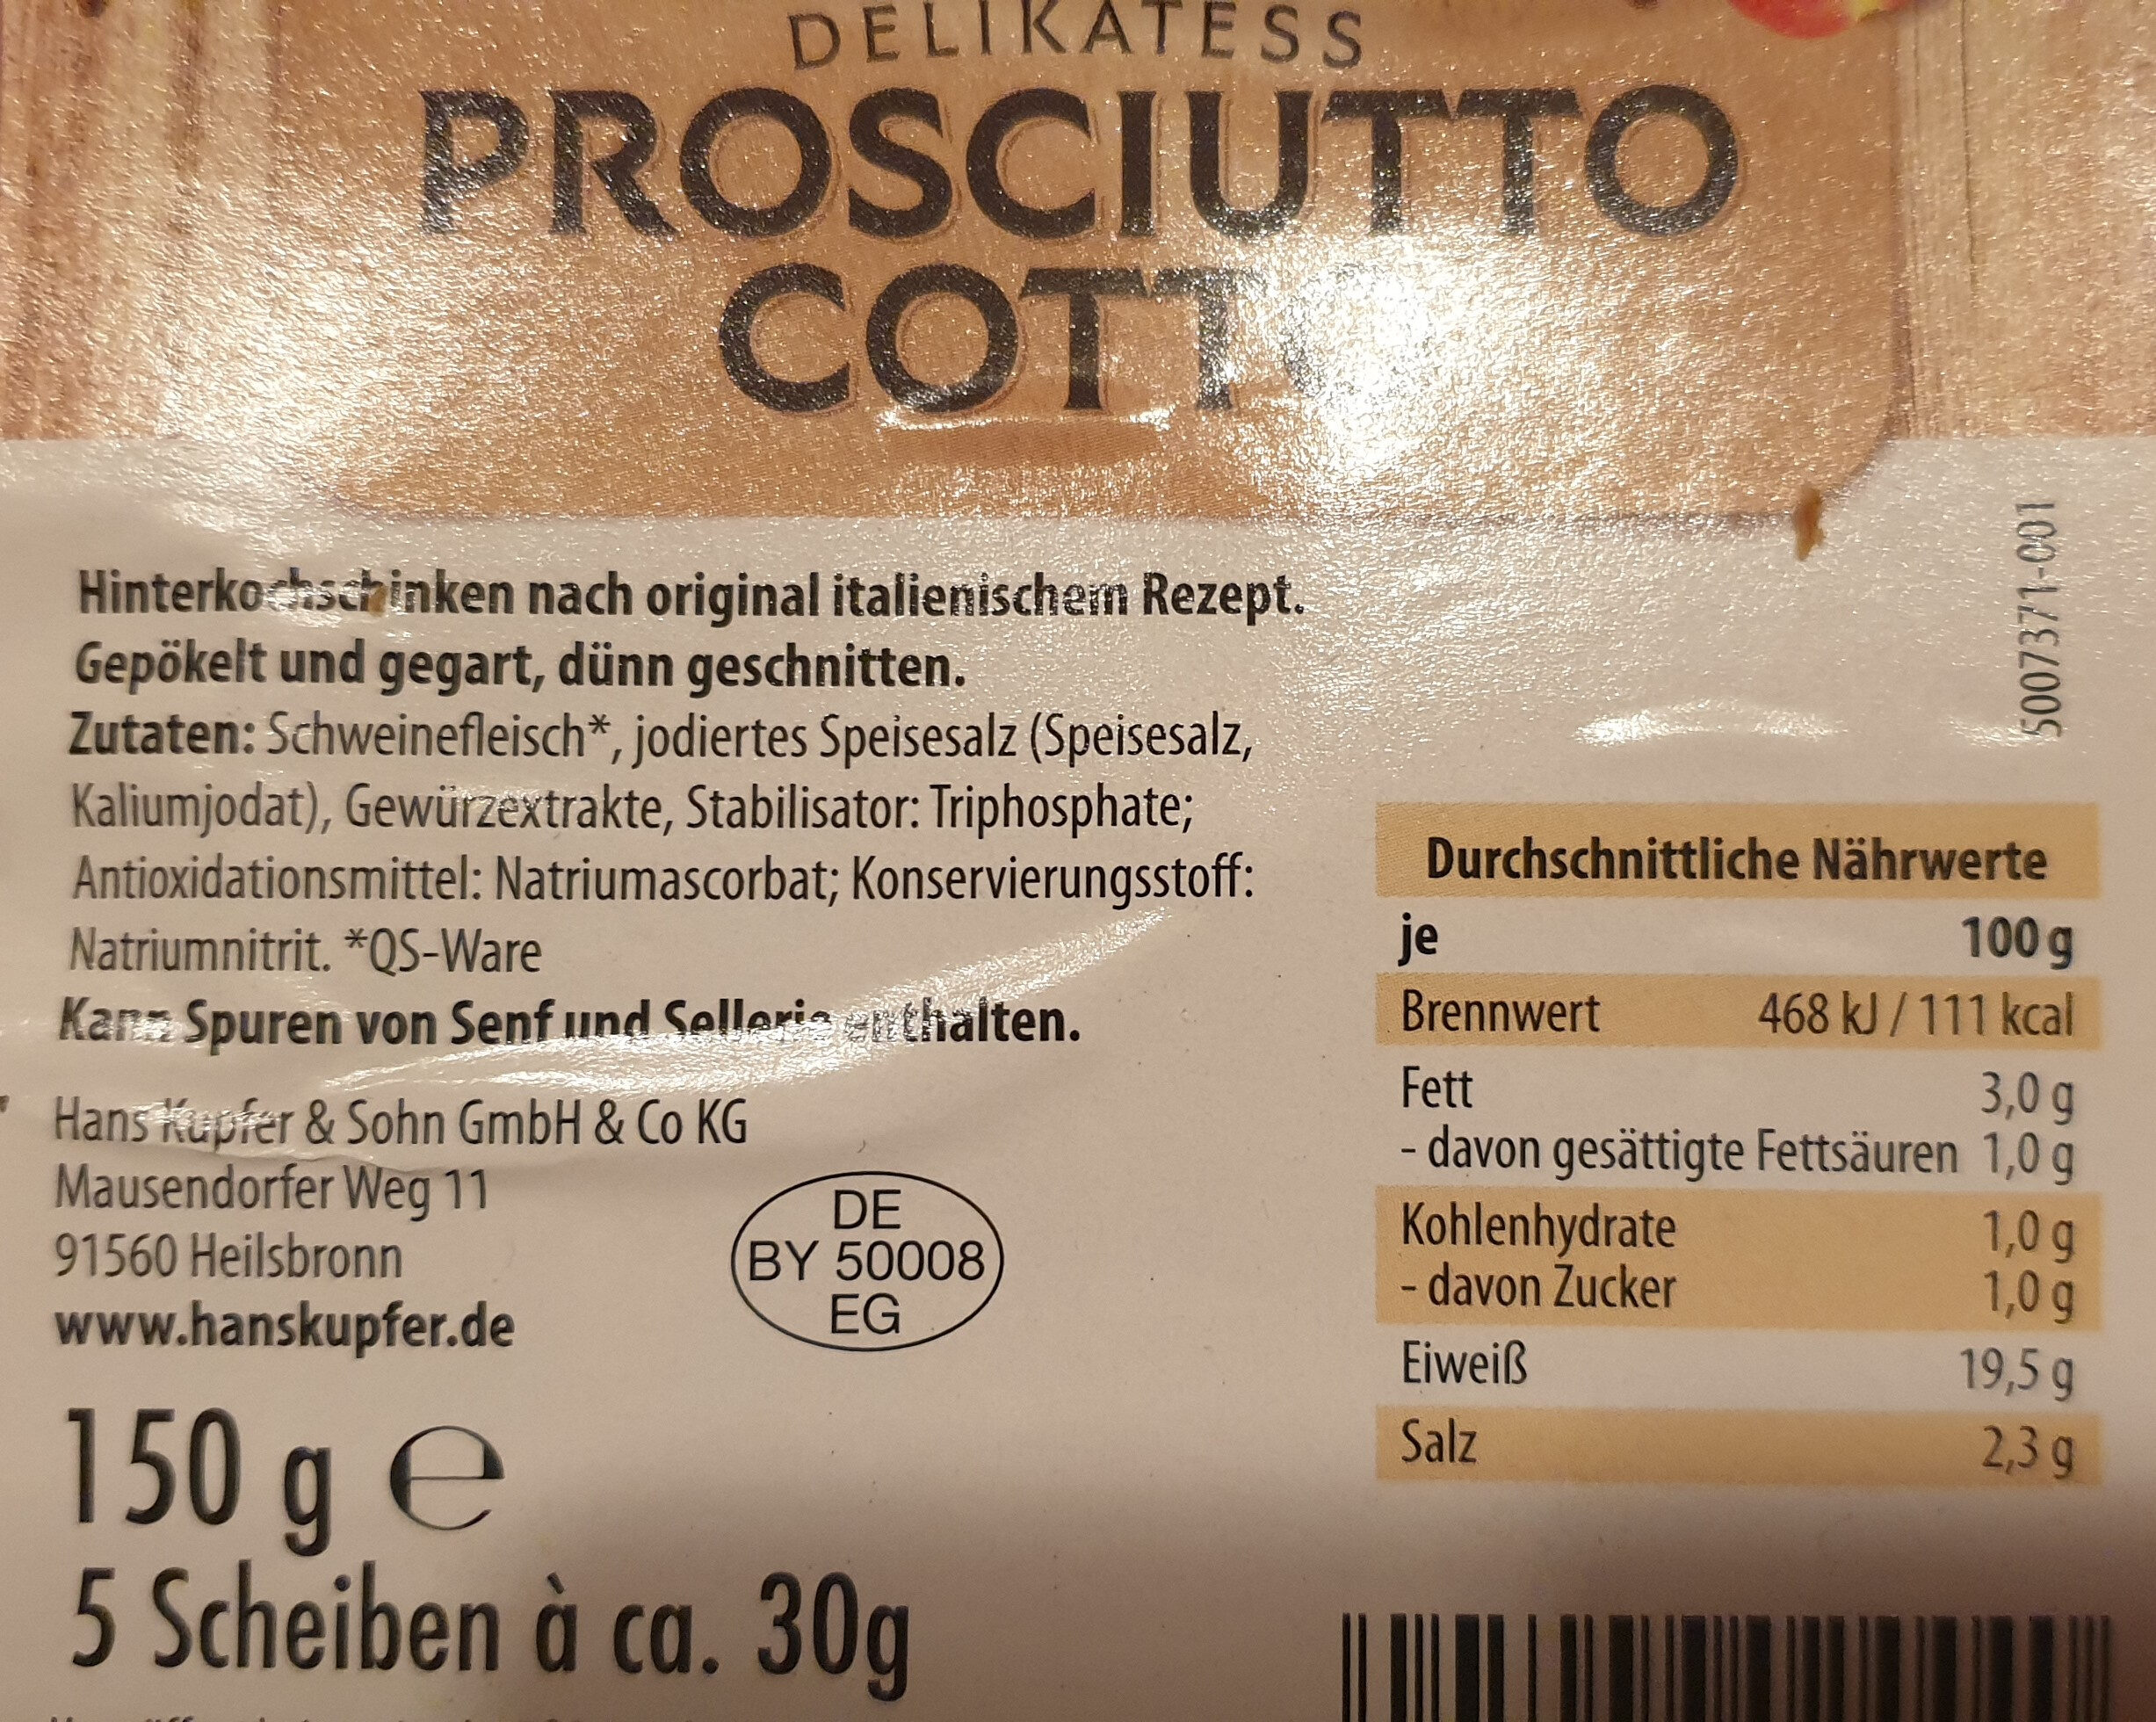 Prosciutto cotto - Ingredients - de